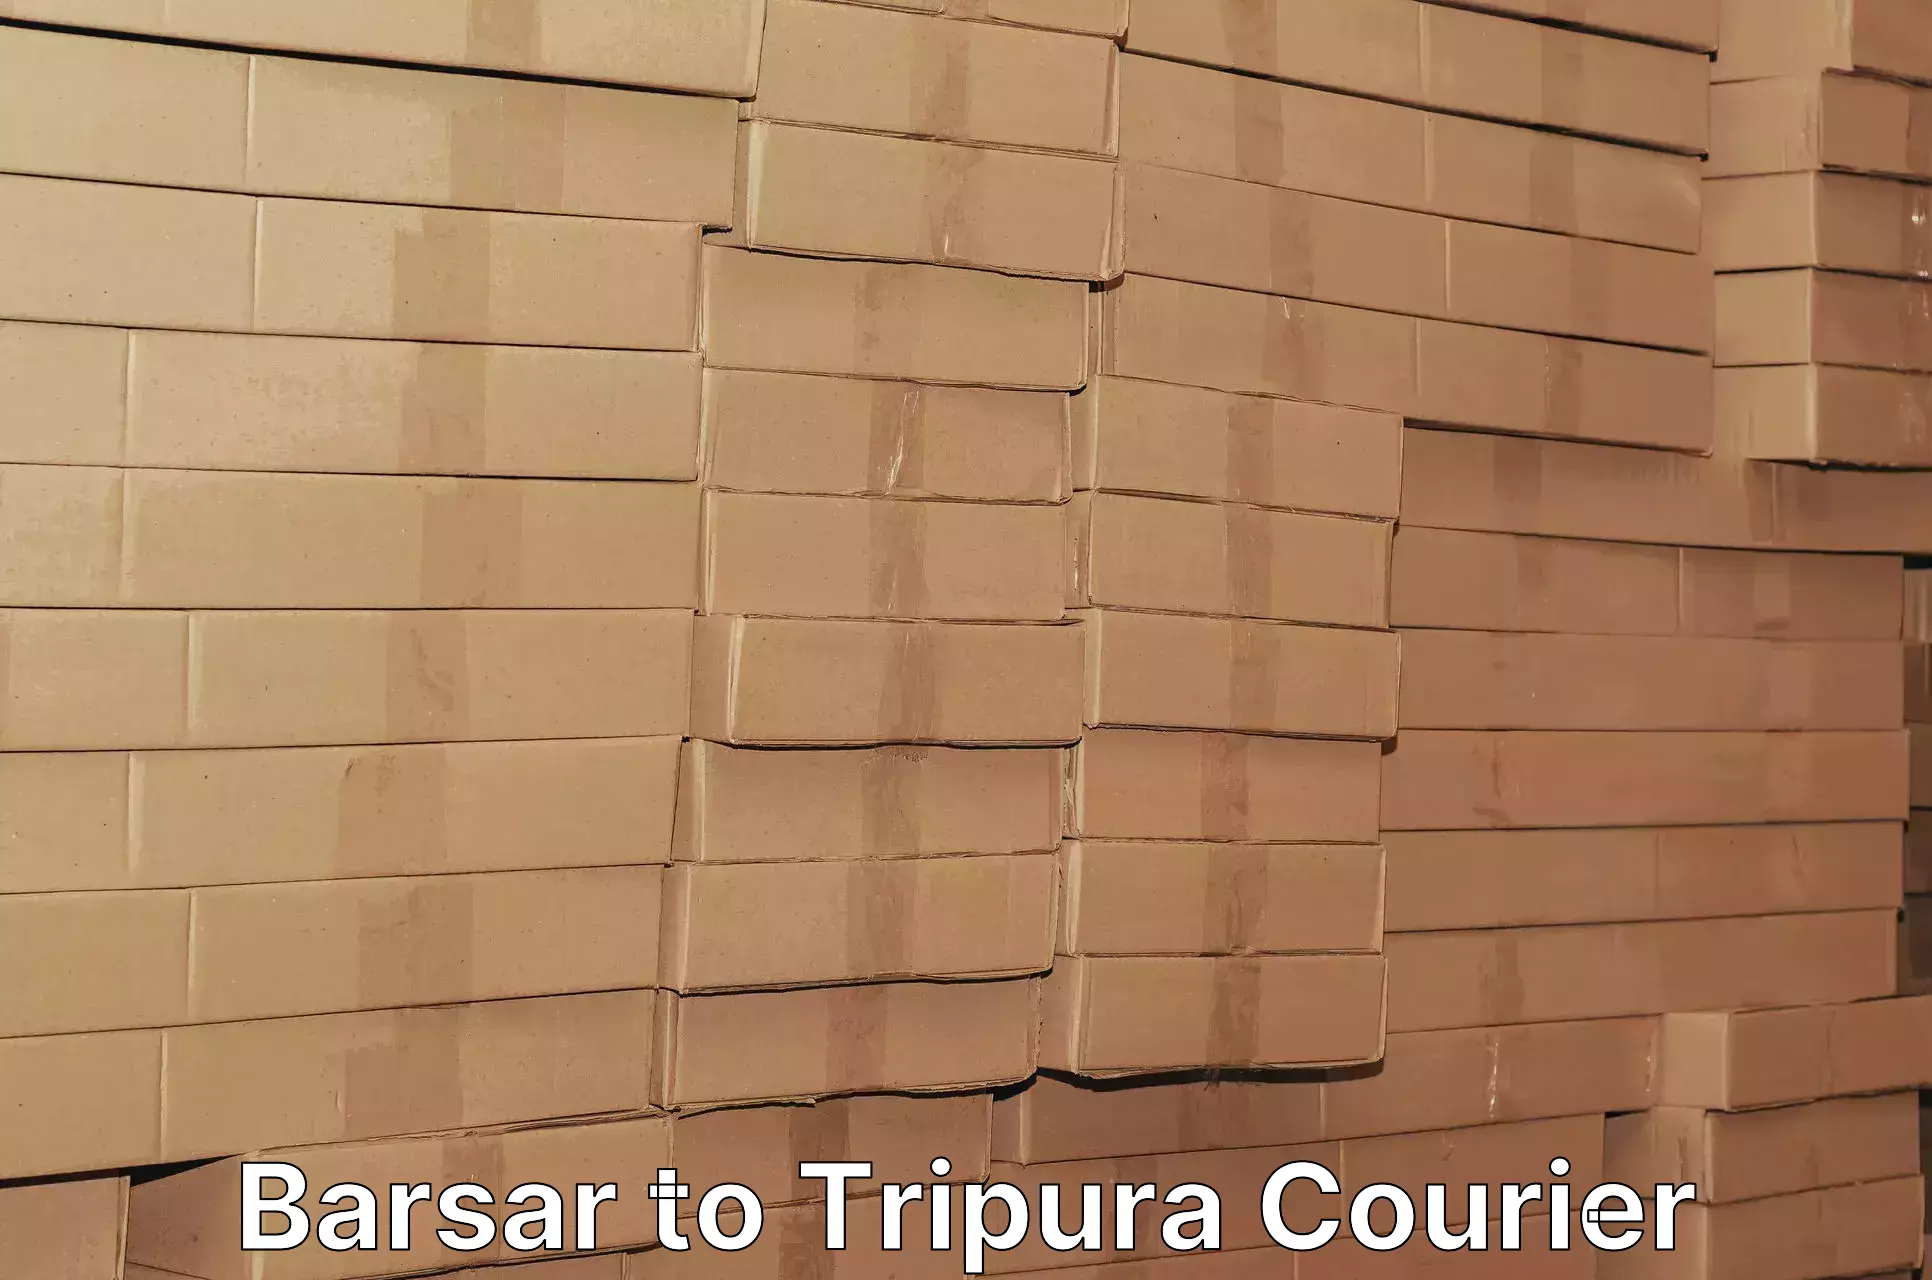 User-friendly delivery service Barsar to North Tripura